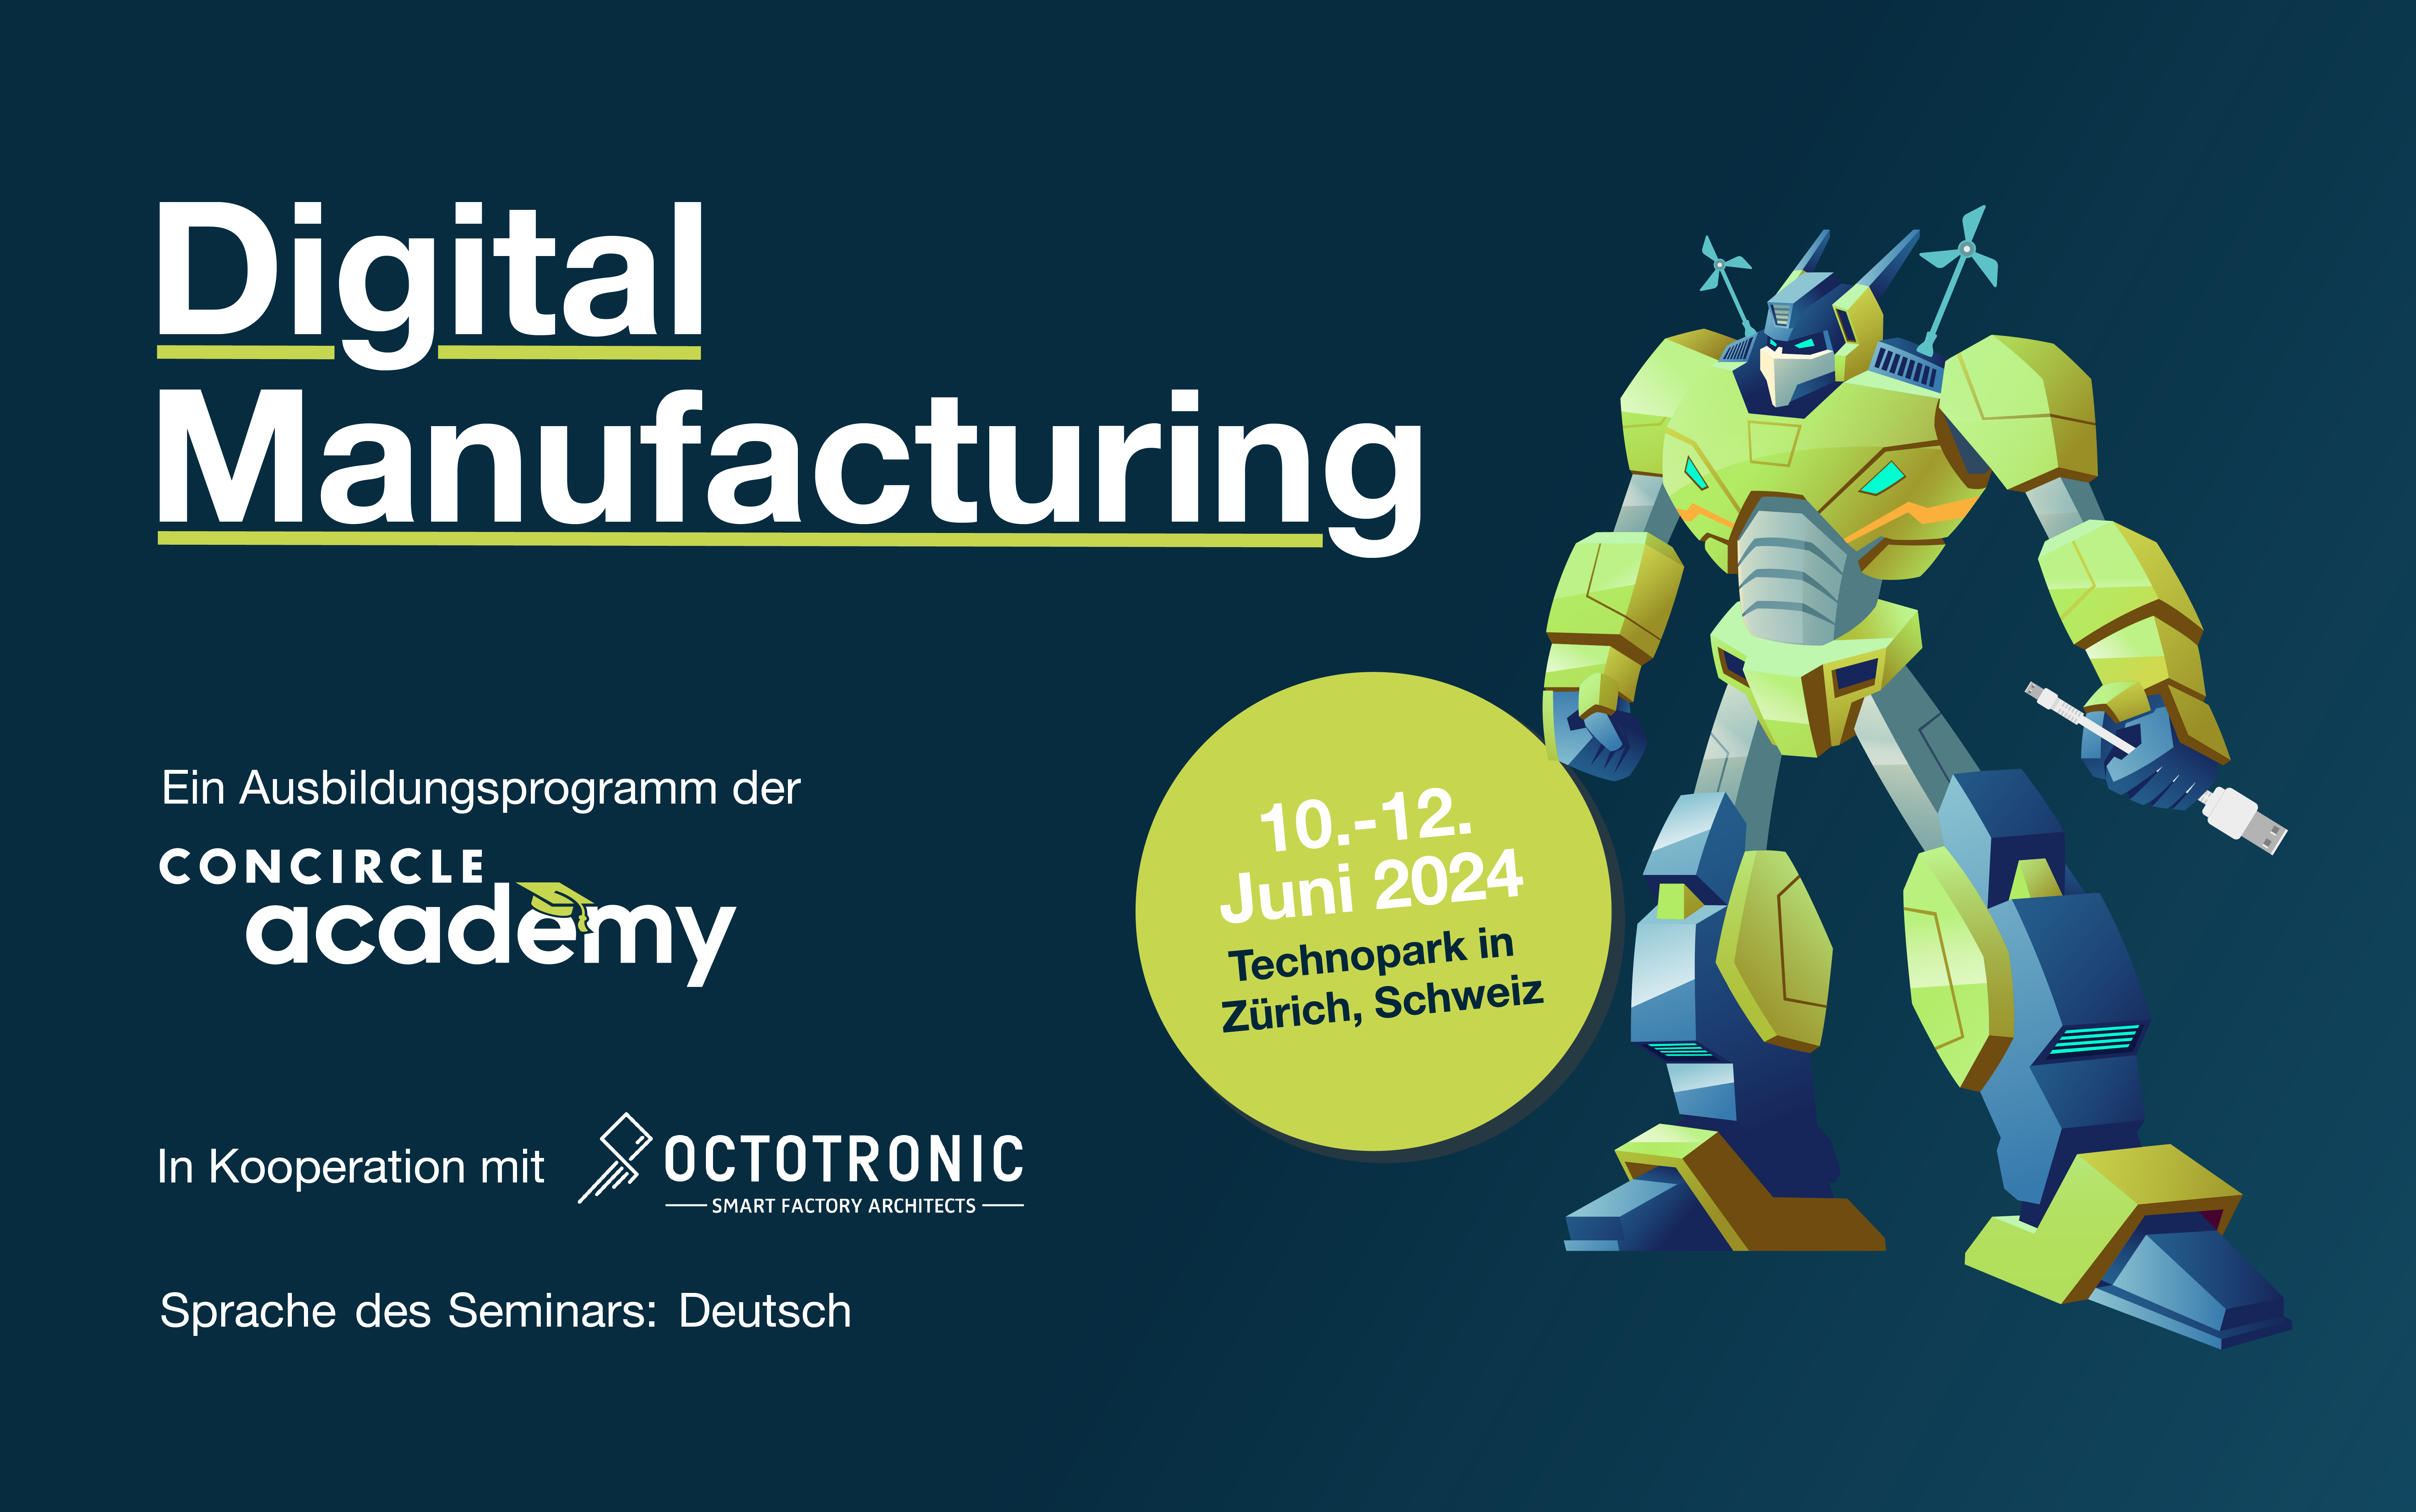 Digital Manufacturing Workshop in Zürich